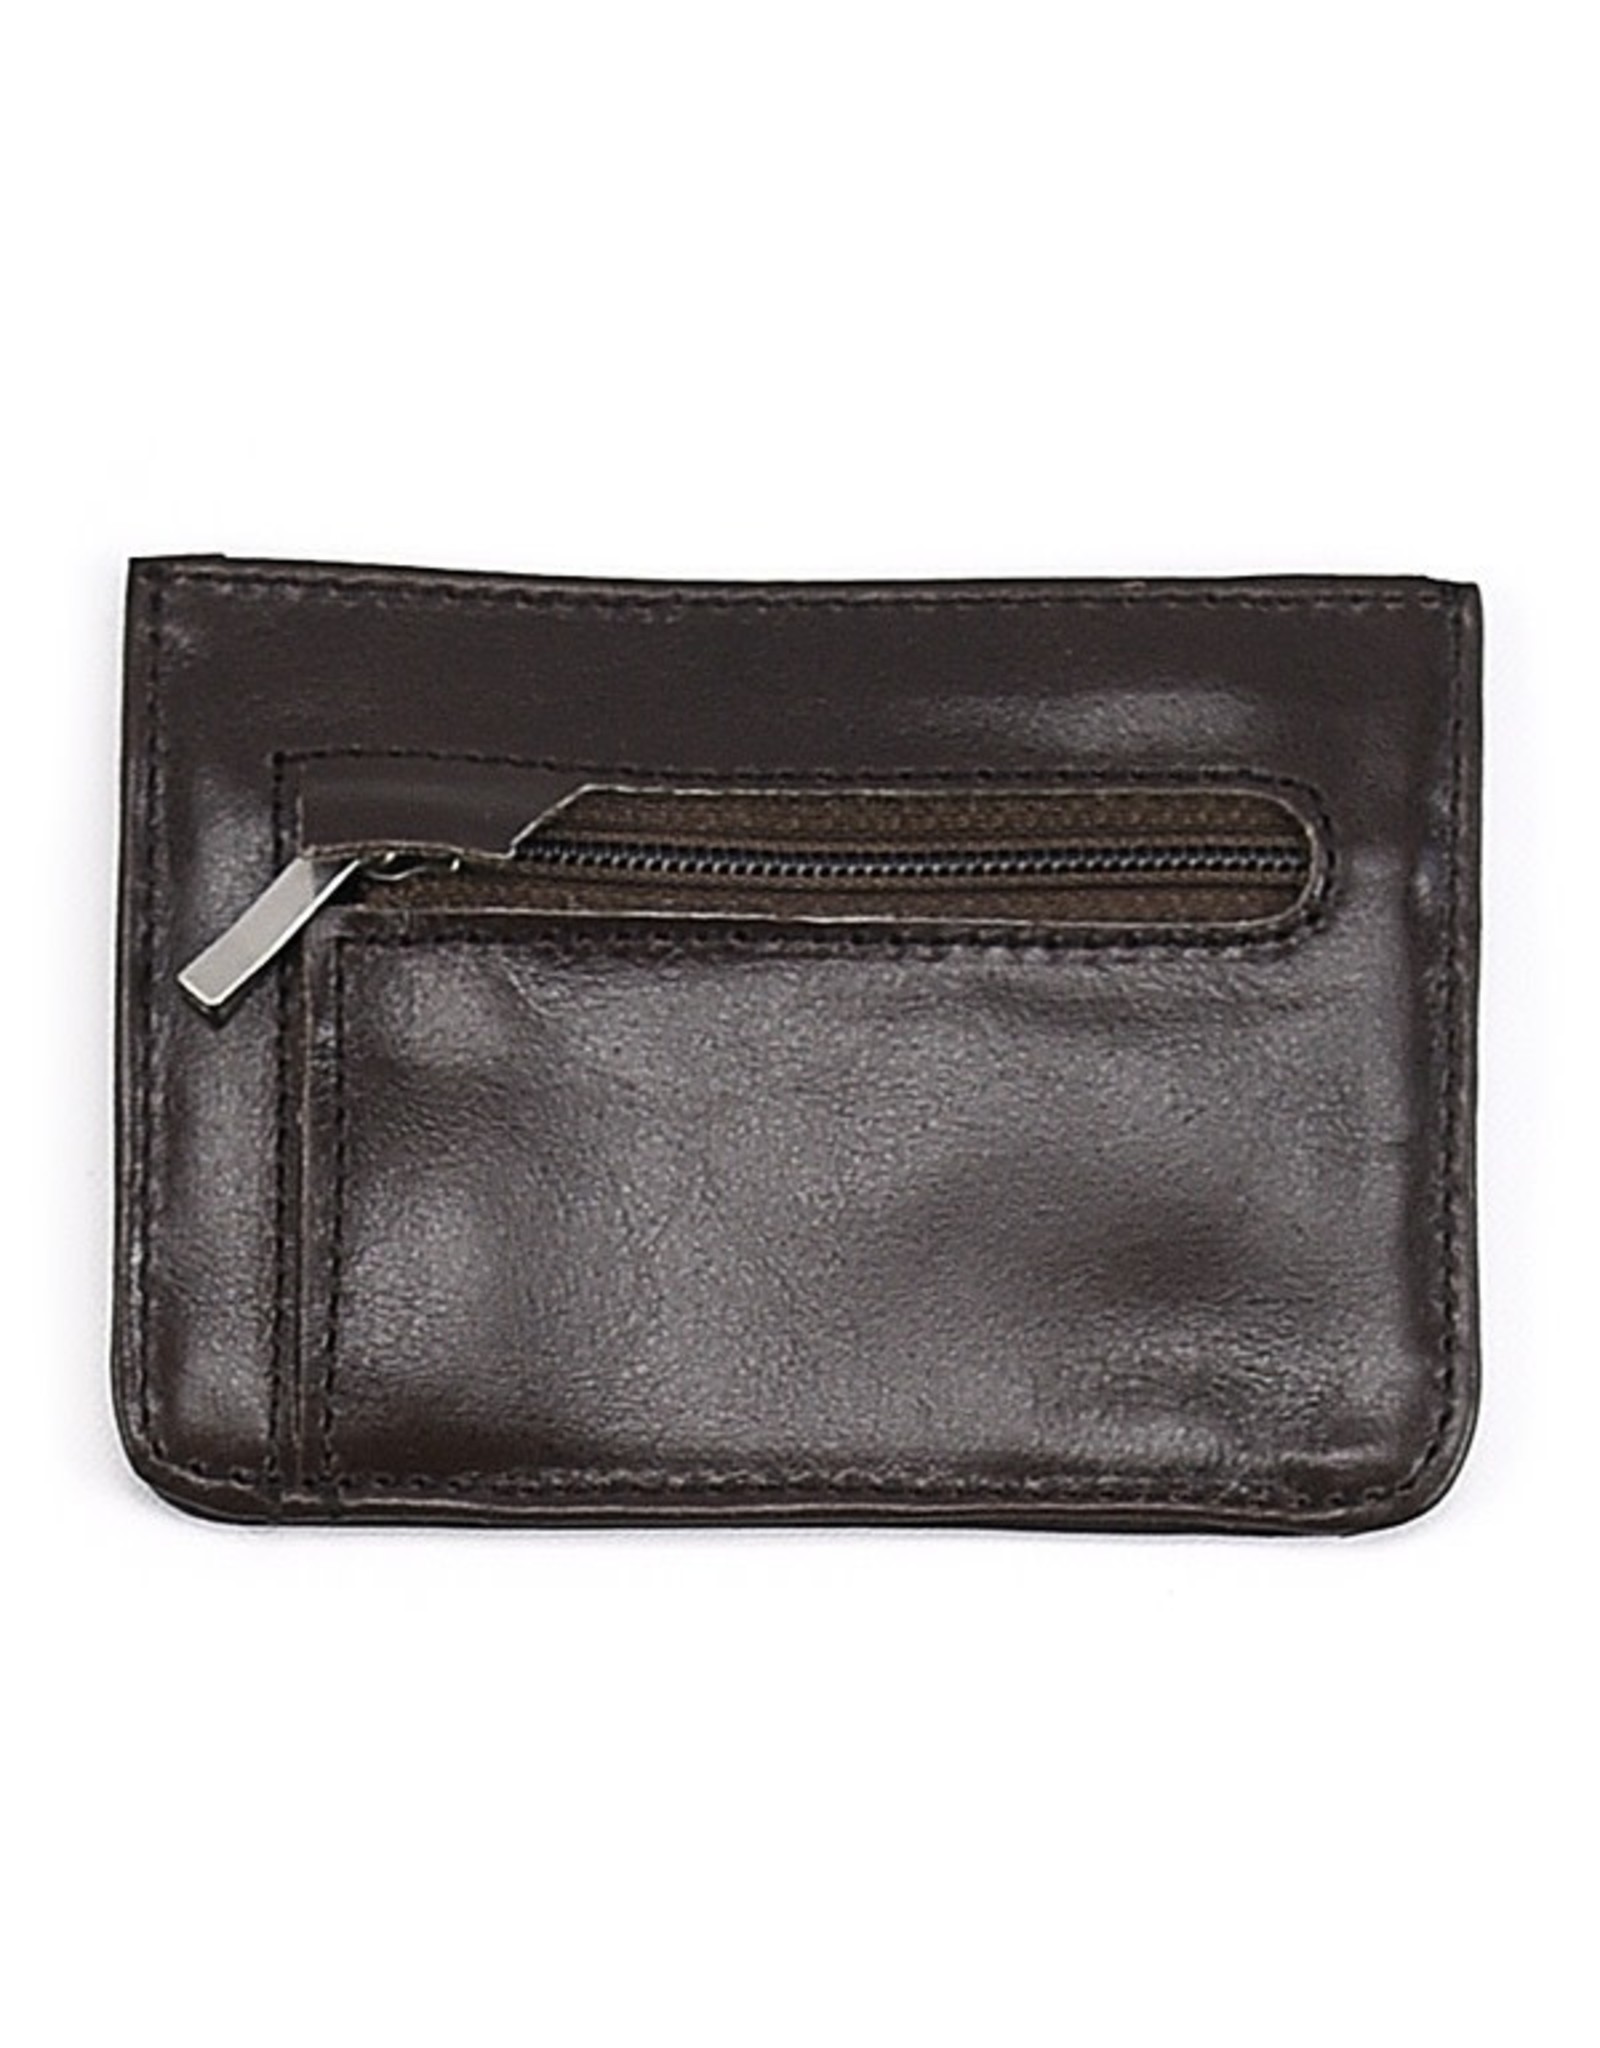 Peru Slim Profile Leather Wallet, Assorted, Peru